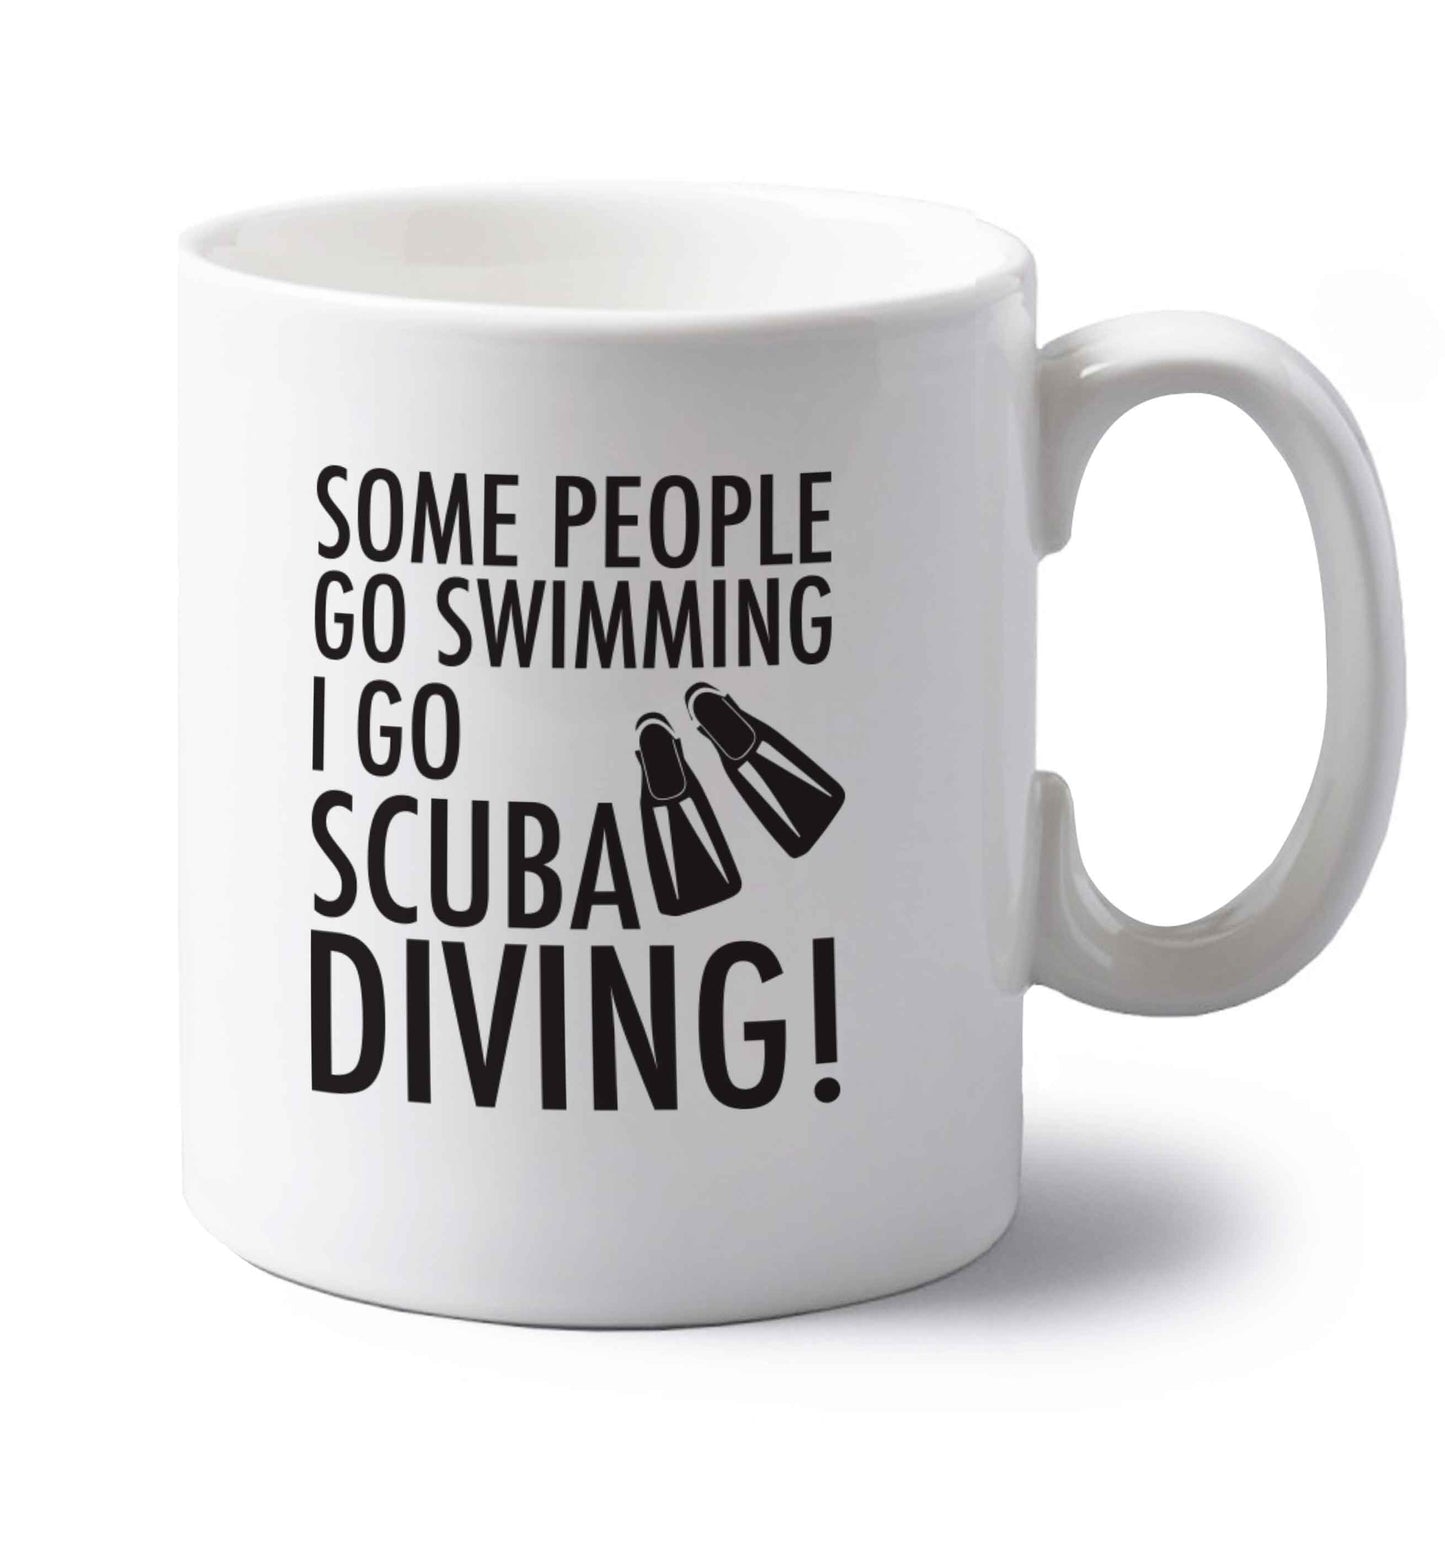 Some people go swimming I go scuba diving! left handed white ceramic mug 